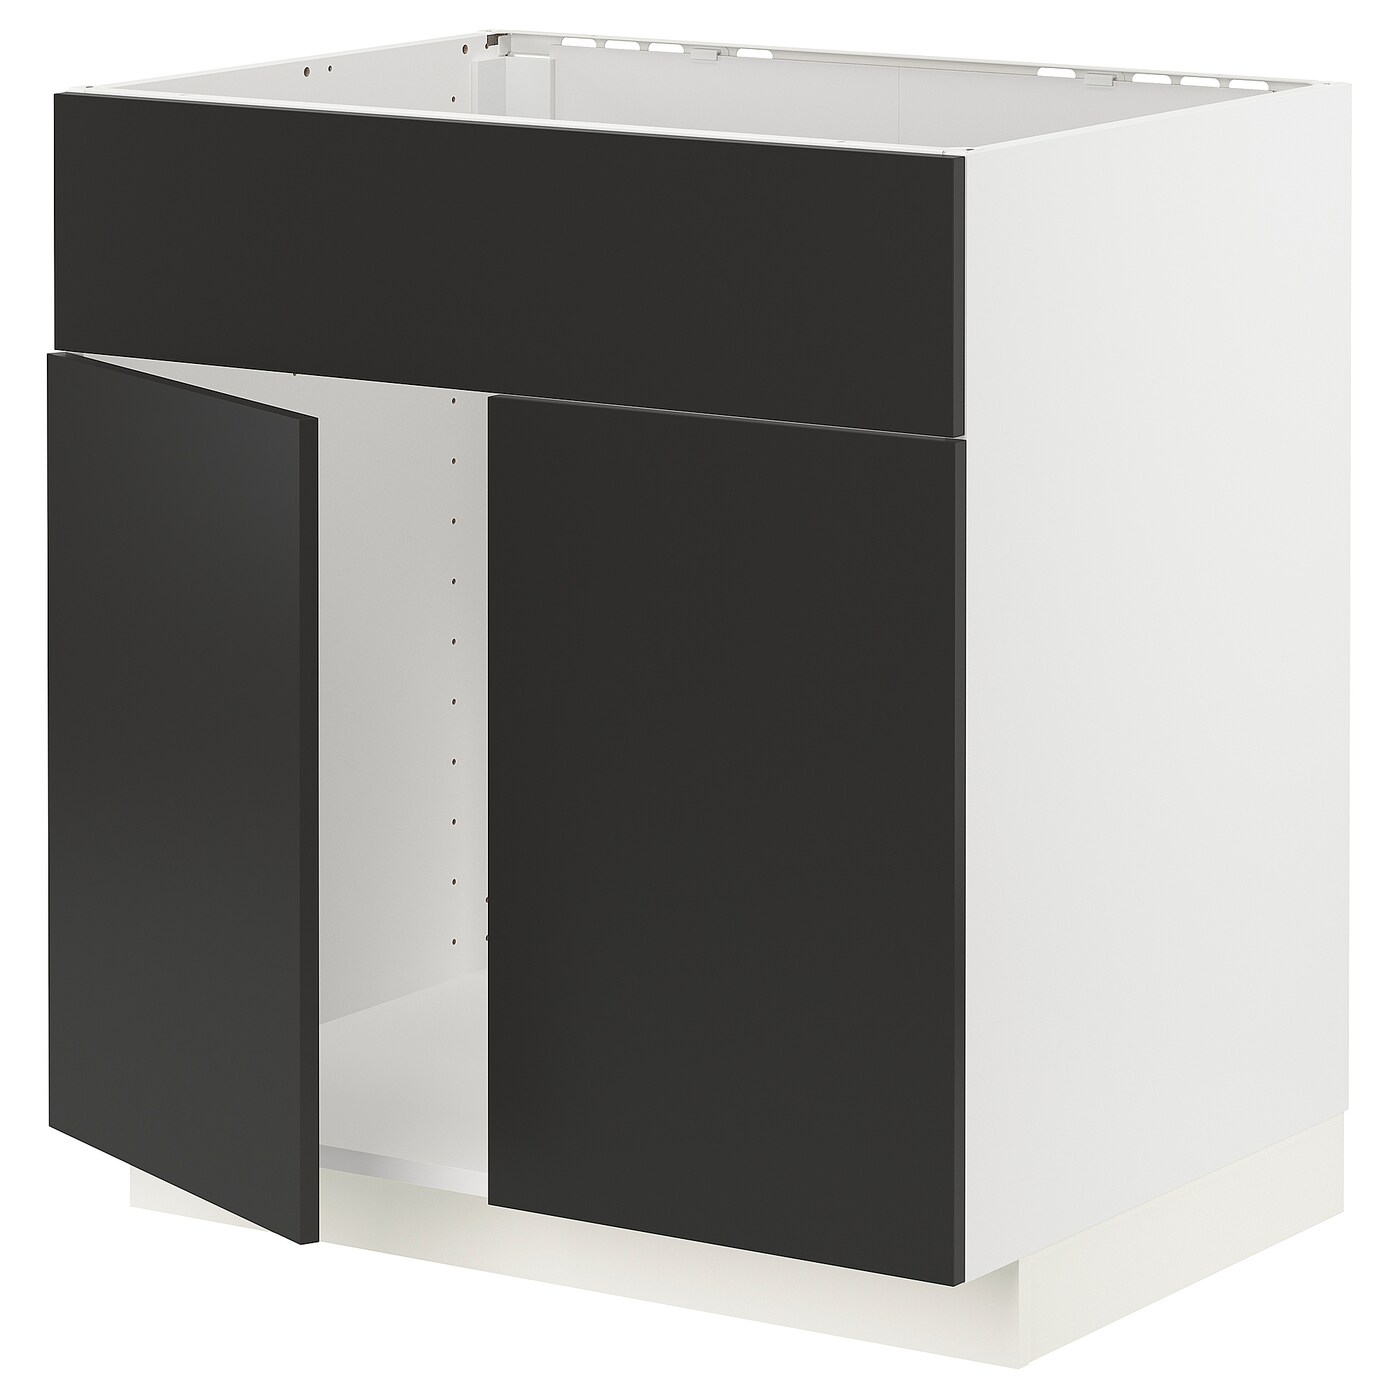 Напольный шкаф - METOD IKEA/ МЕТОД ИКЕА,  88х80 см, белый/черный